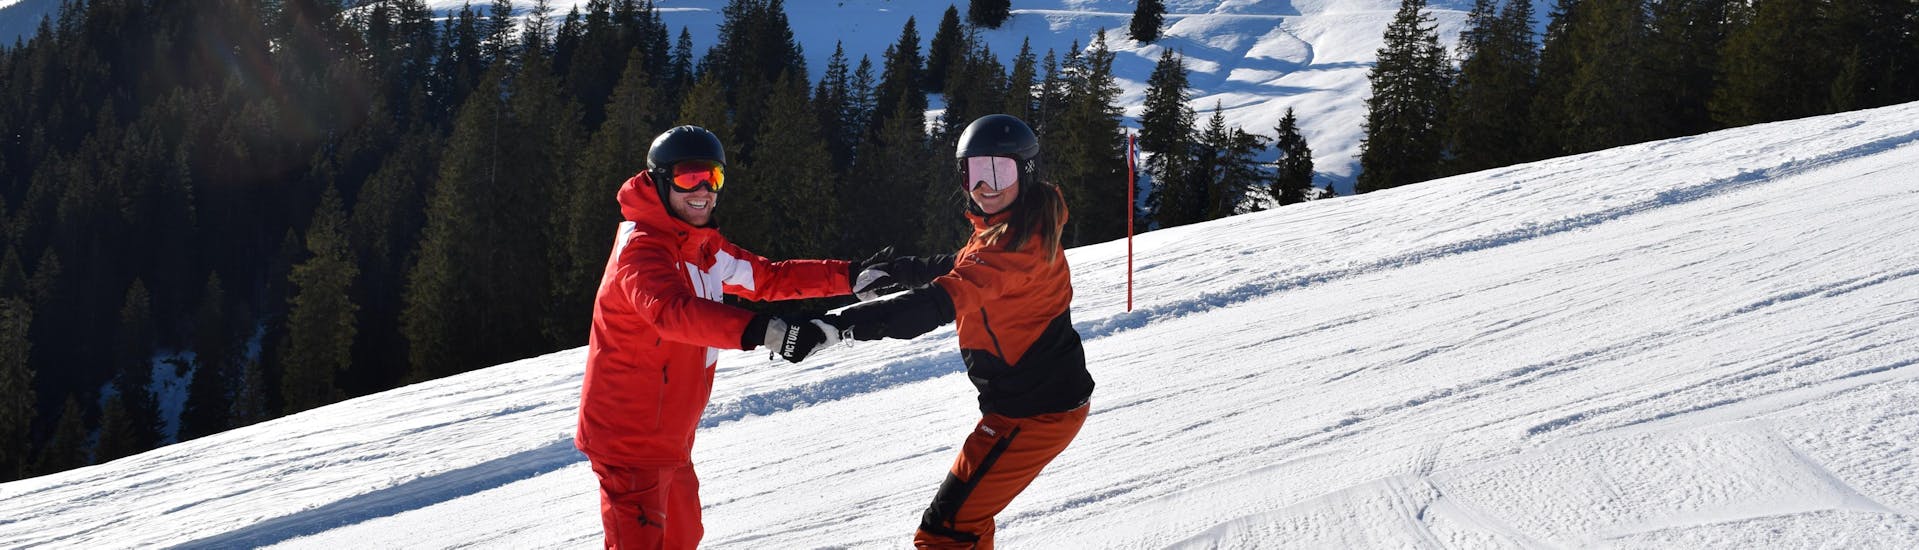 Lezioni private di Snowboard a partire da 5 anni per tutti i livelli con Ski School Snowsports Westendorf.